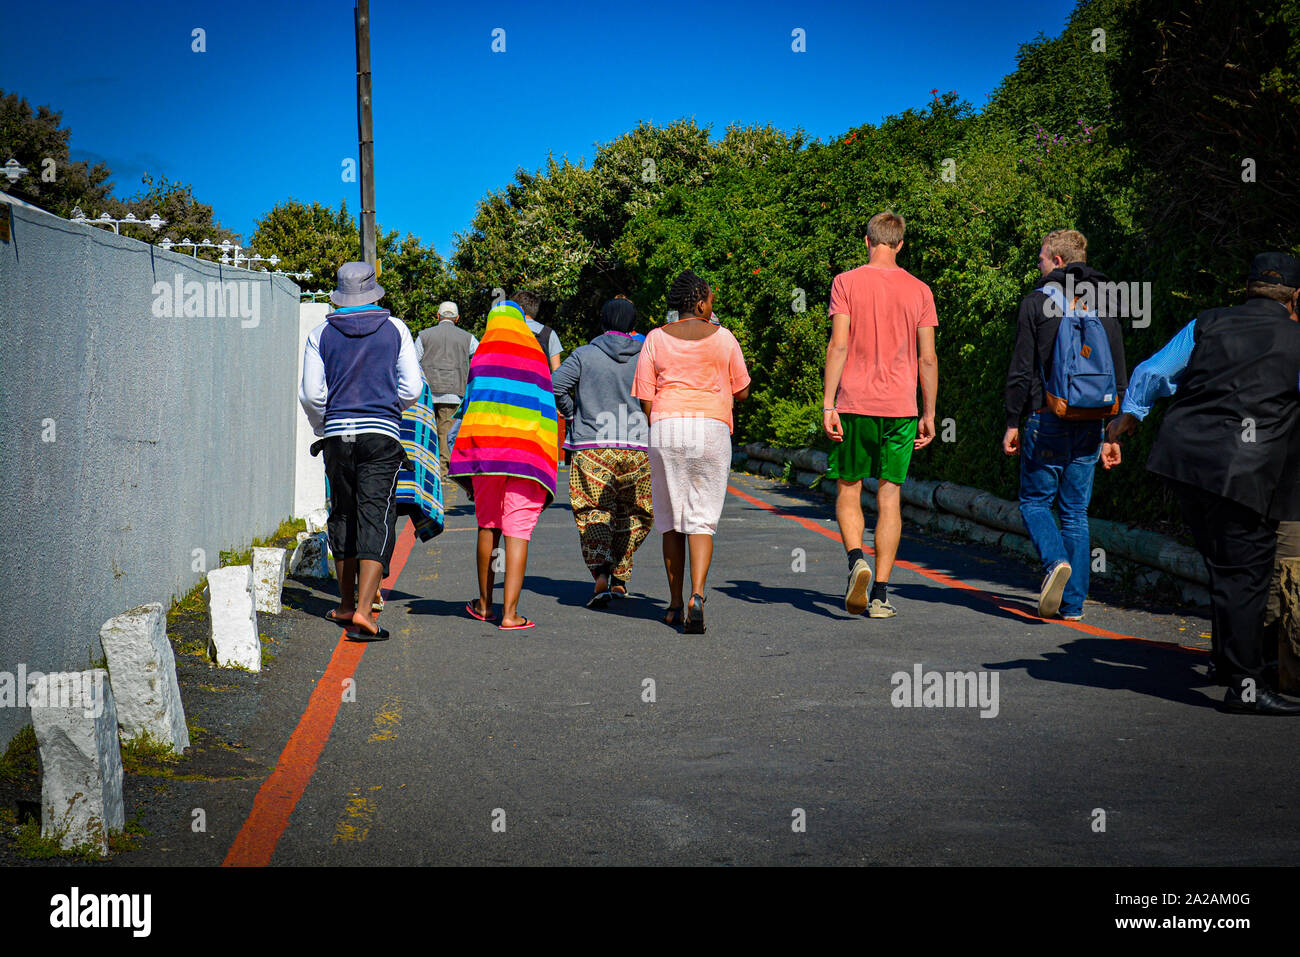 Vus de derrière, les gens portant des vêtements colorés comme ponchos Banque D'Images